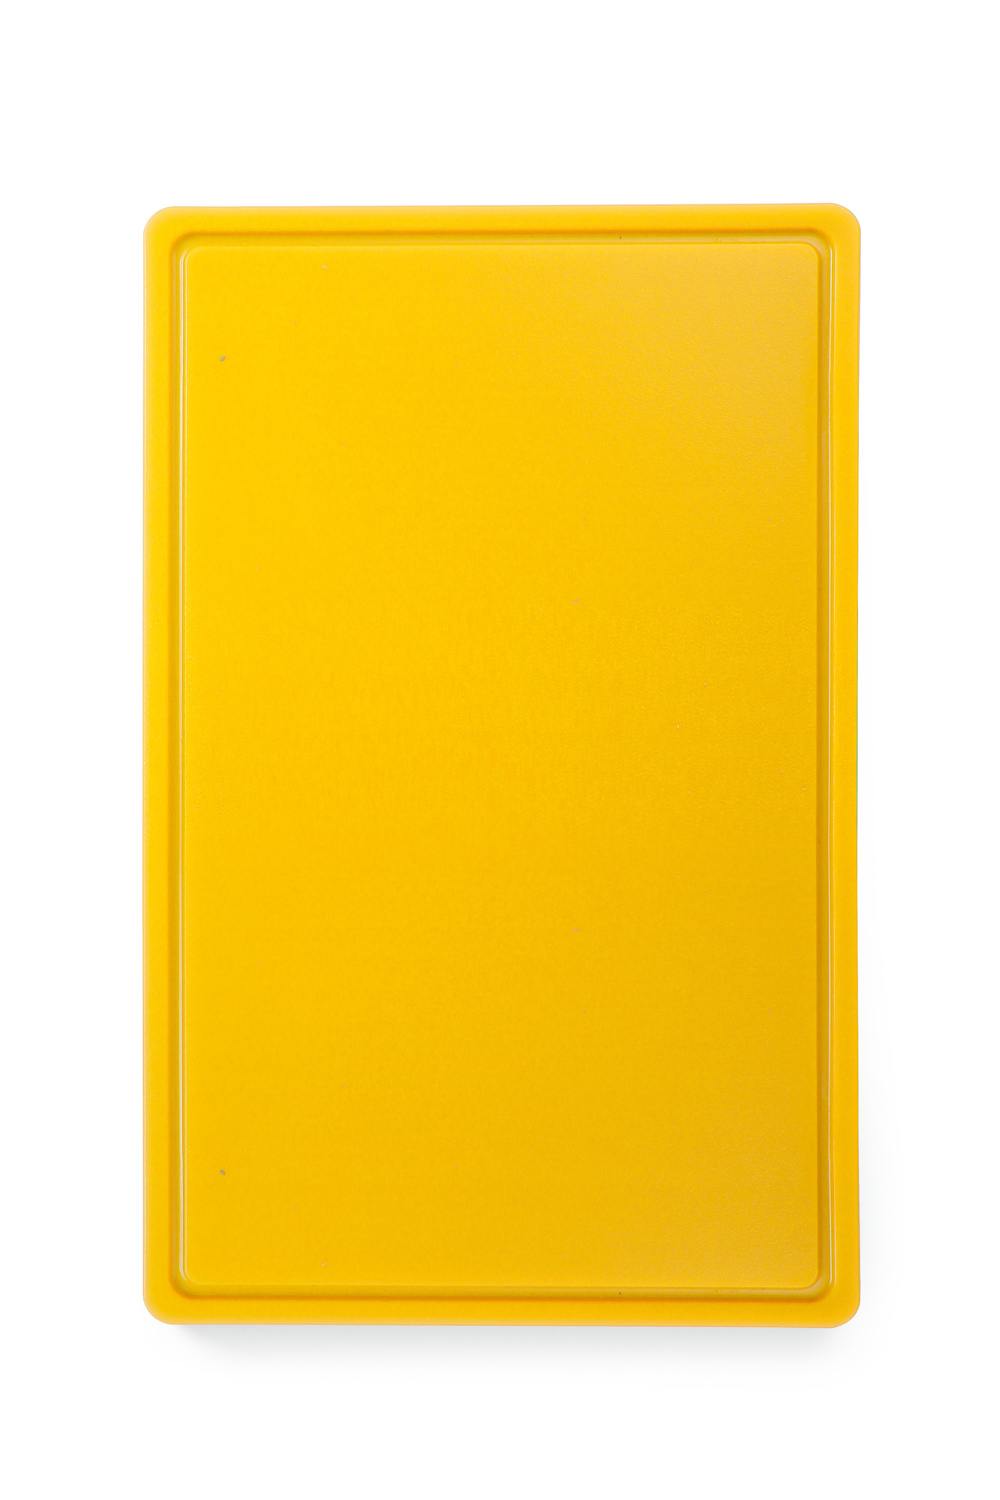 HENDI Schneidbretter HACCP Gastronorm 1/1 - für Geflügel - Farbe: gelb 530x325x(H)15 mm